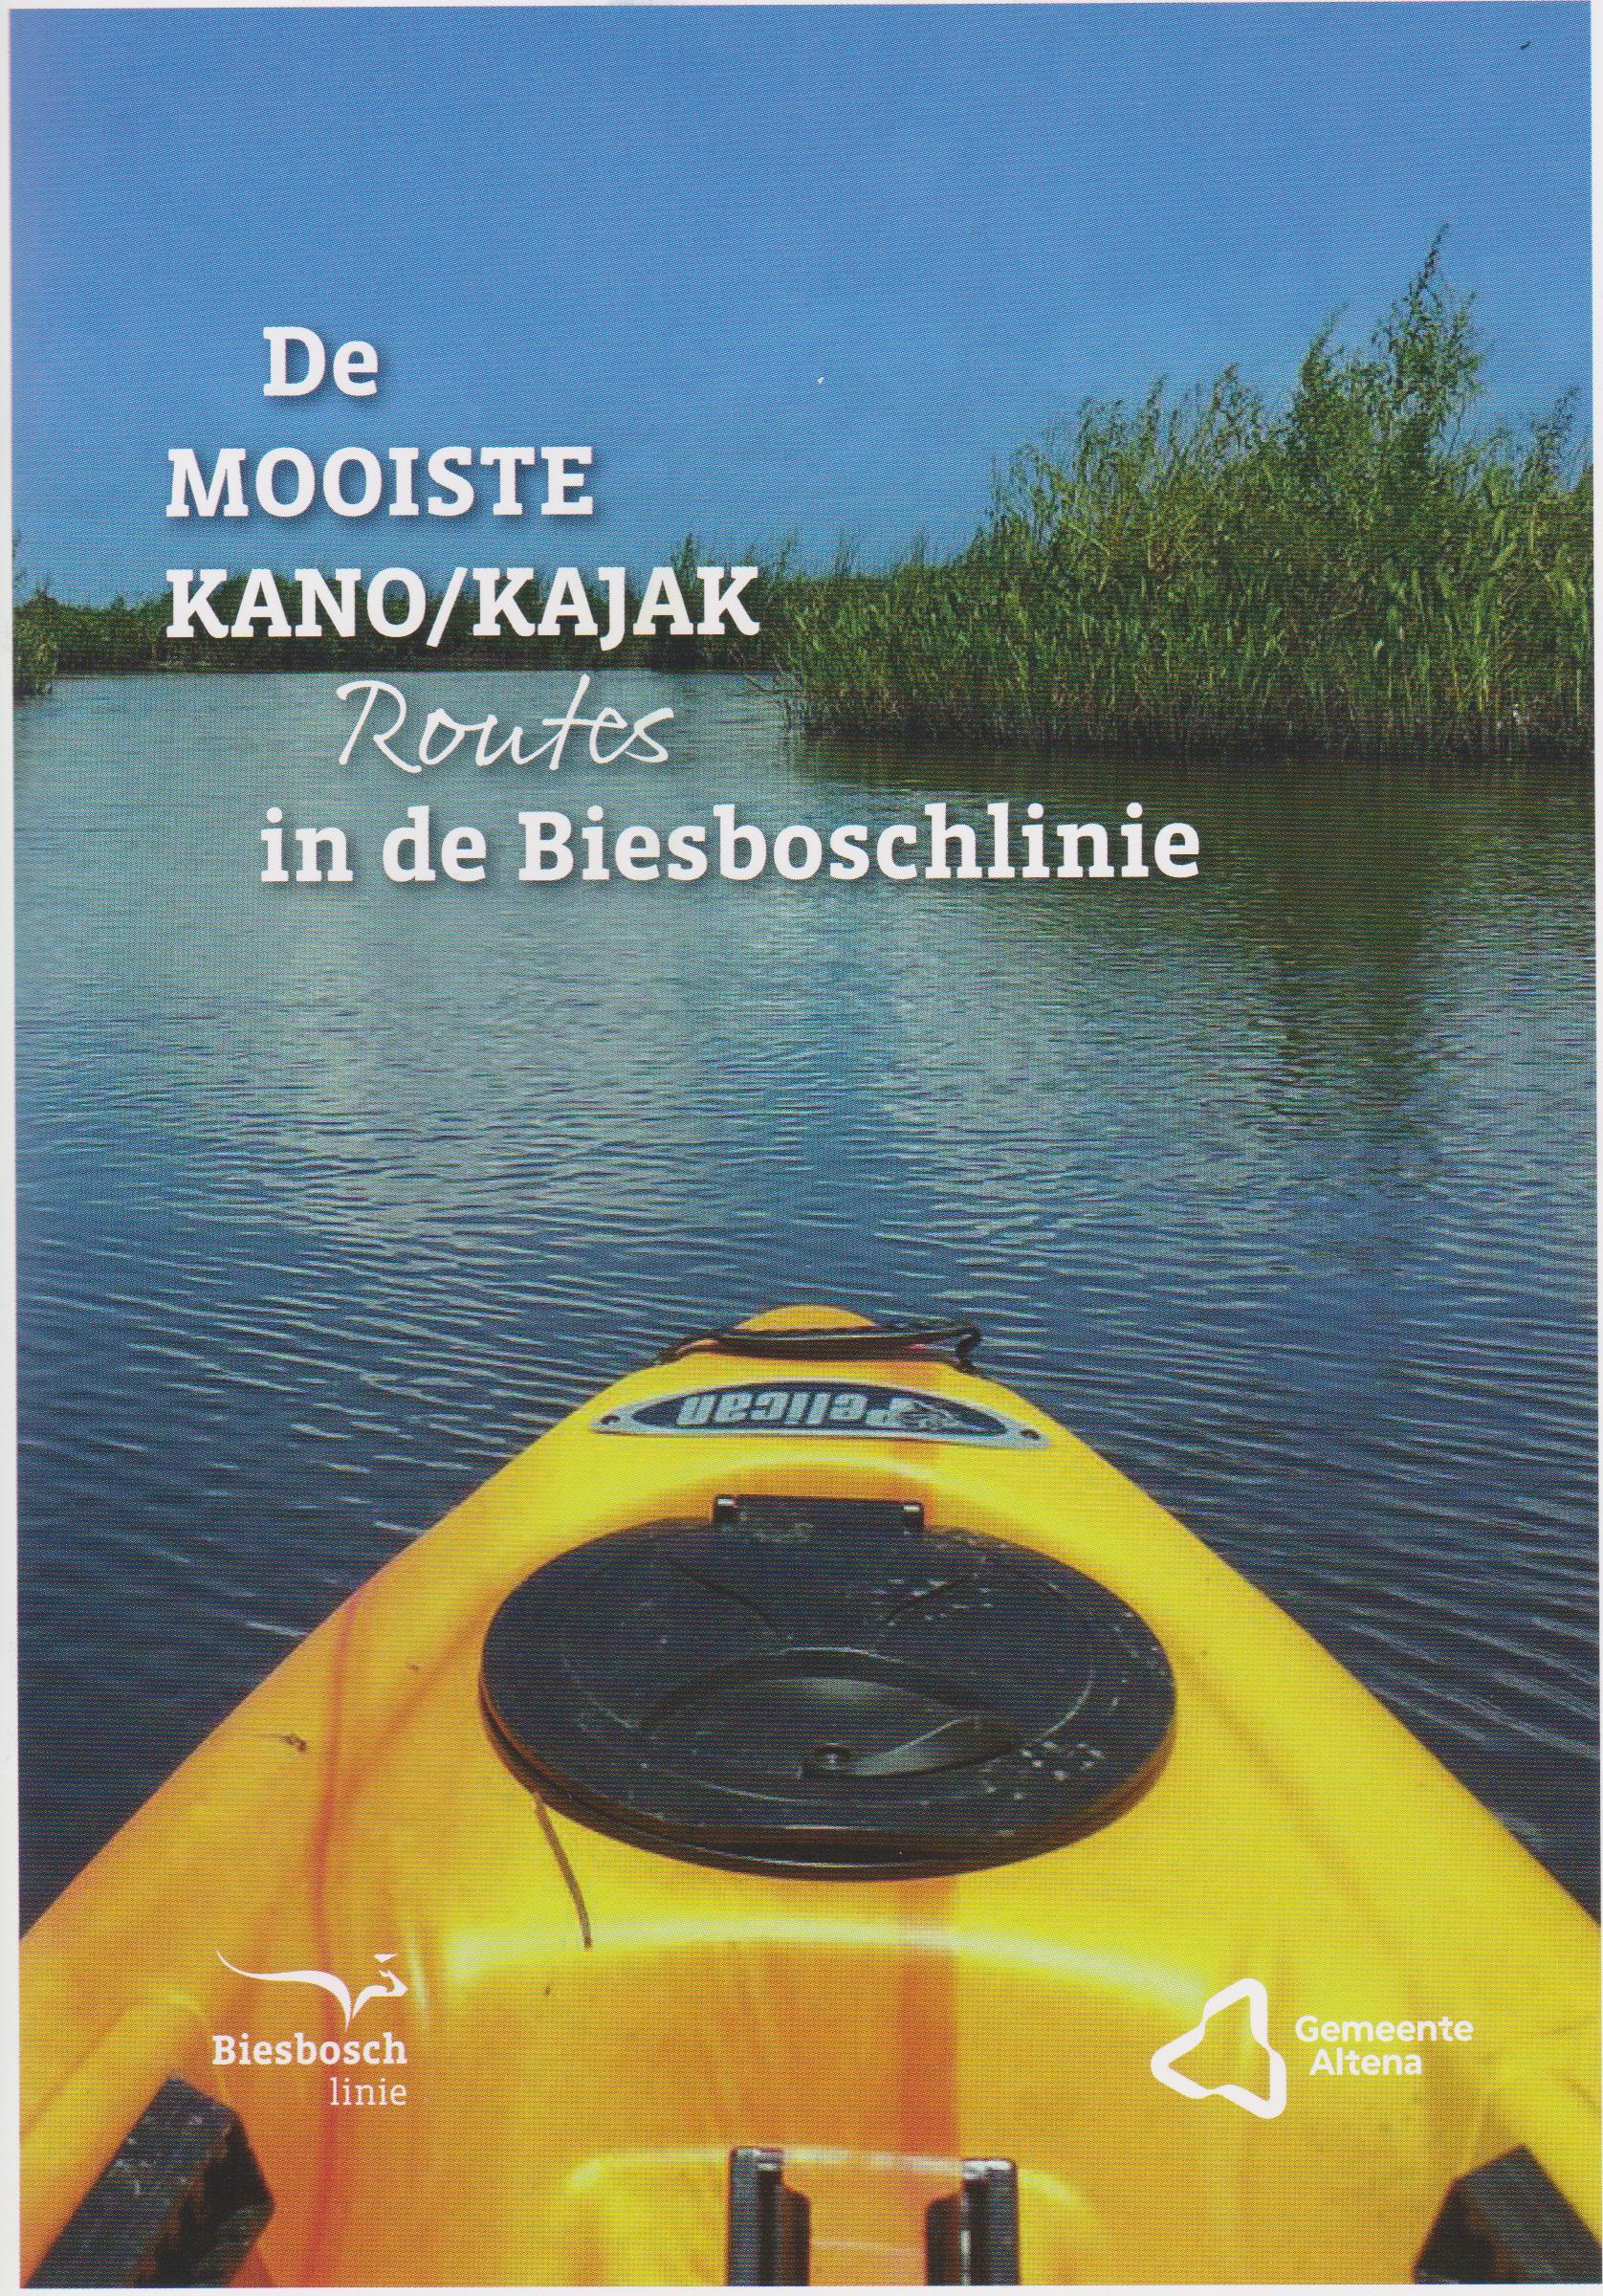 Kano/Kajak routes in de Biesboschlinie